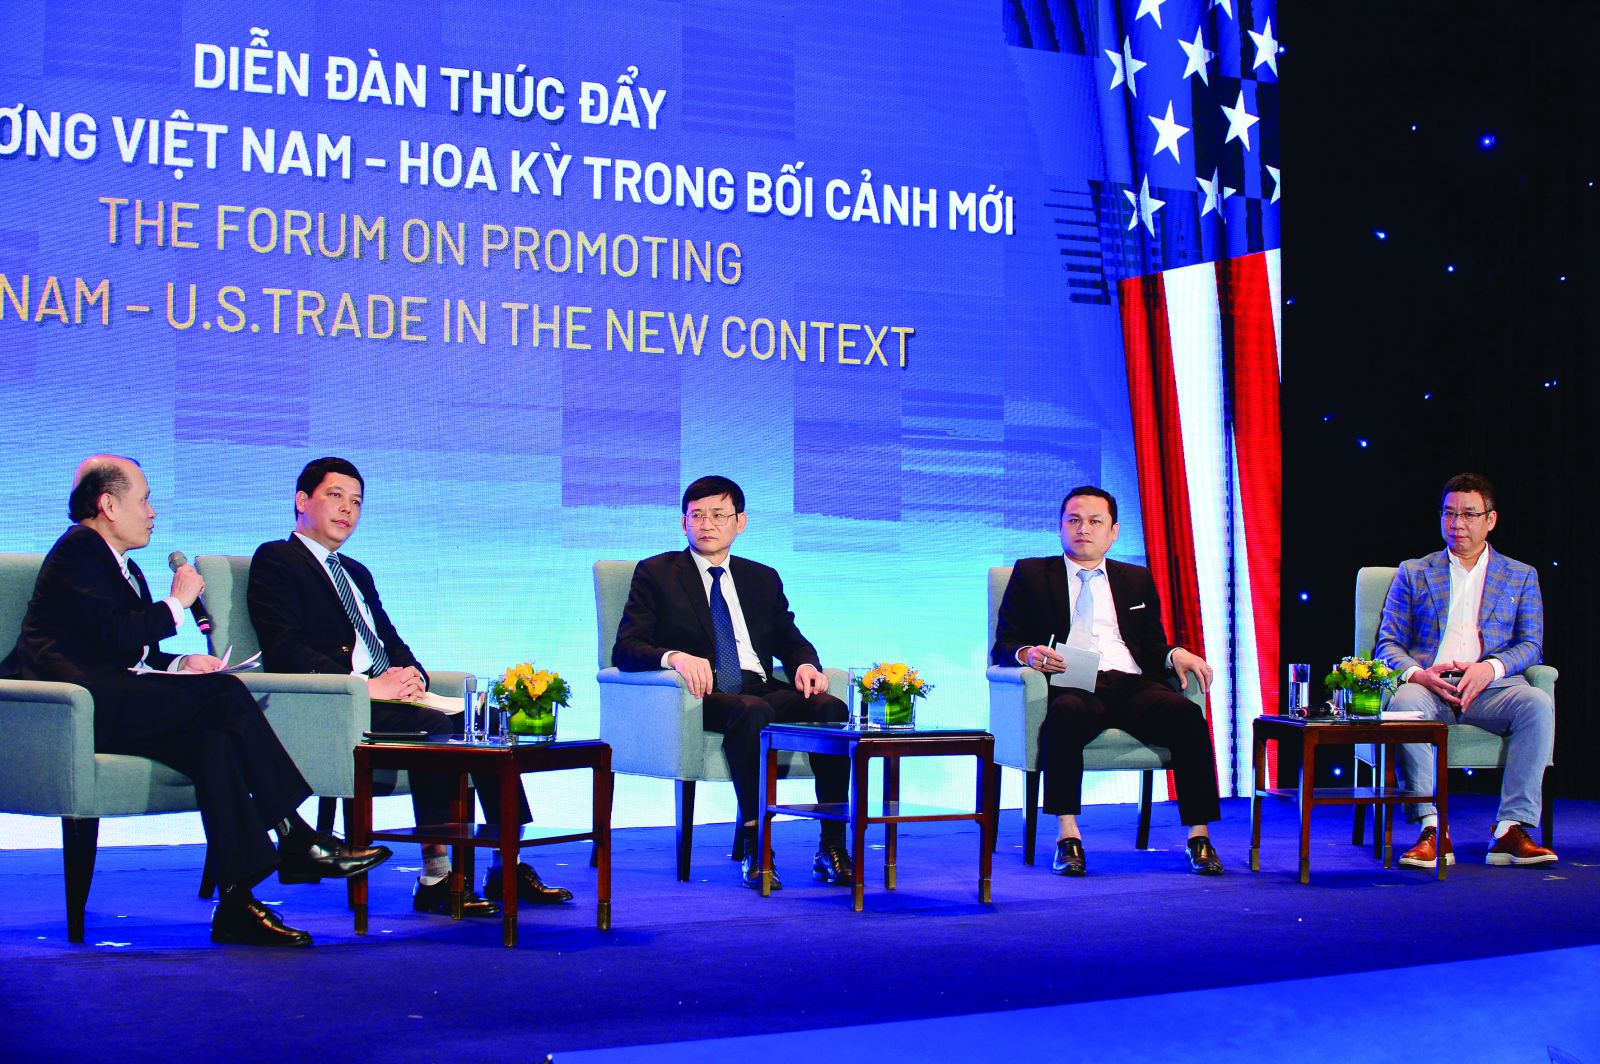 Diễn đàn “Thúc đẩy giao thương Việt Nam - Hoa Kỳ” trong bối cảnh mới do Tạp chí Diễn đàn Doanh nghiệp phối hợp với Vietnam Airlines tổ chức nhân dịp Vietnam Airlines được trao chứng chỉ bay thẳng thường lệ tới đến Mỹ.